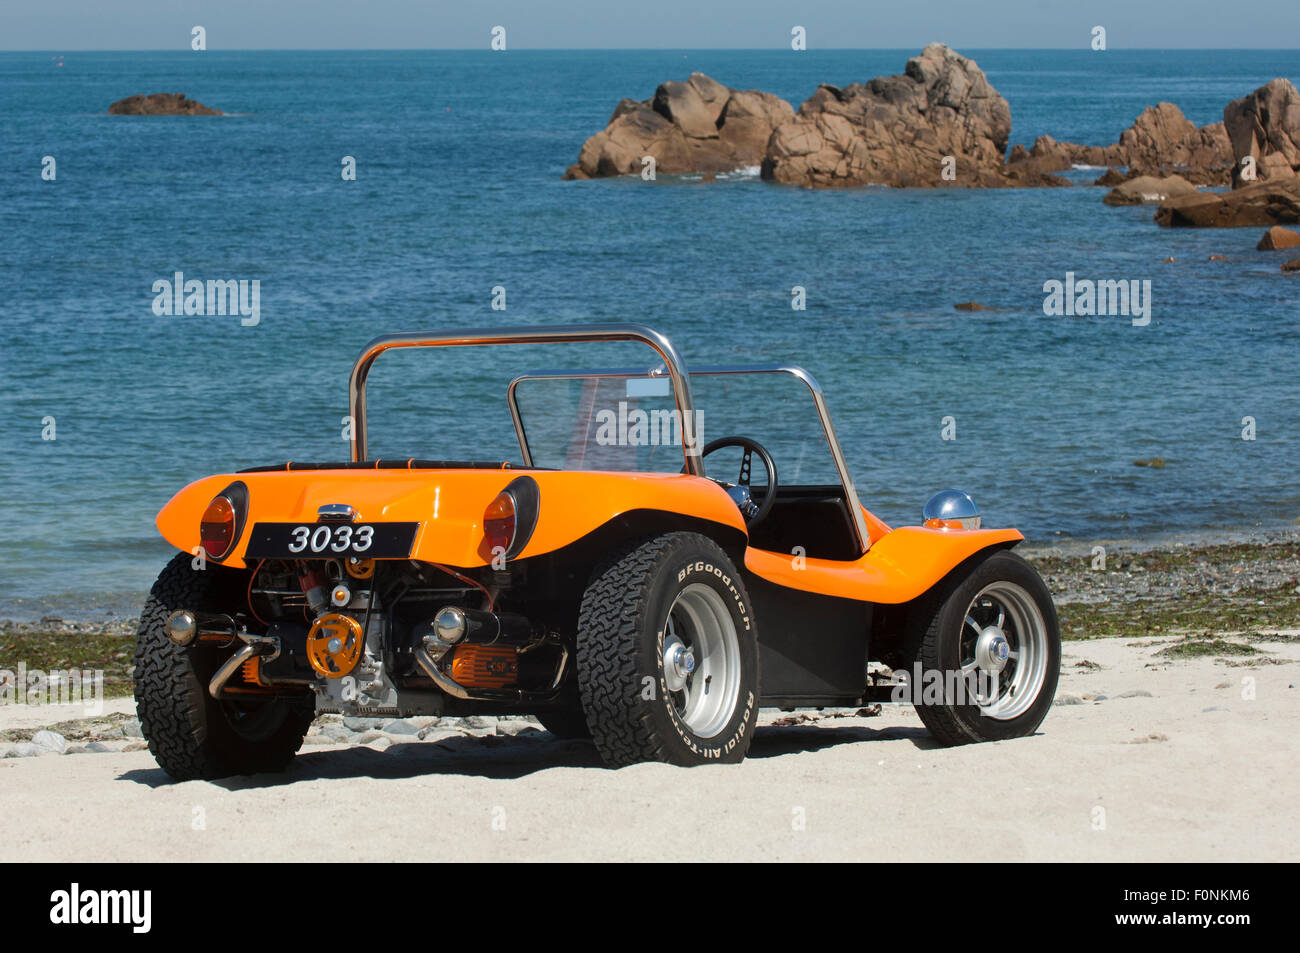 Beach buggy vw -Fotos und -Bildmaterial in hoher Auflösung – Alamy